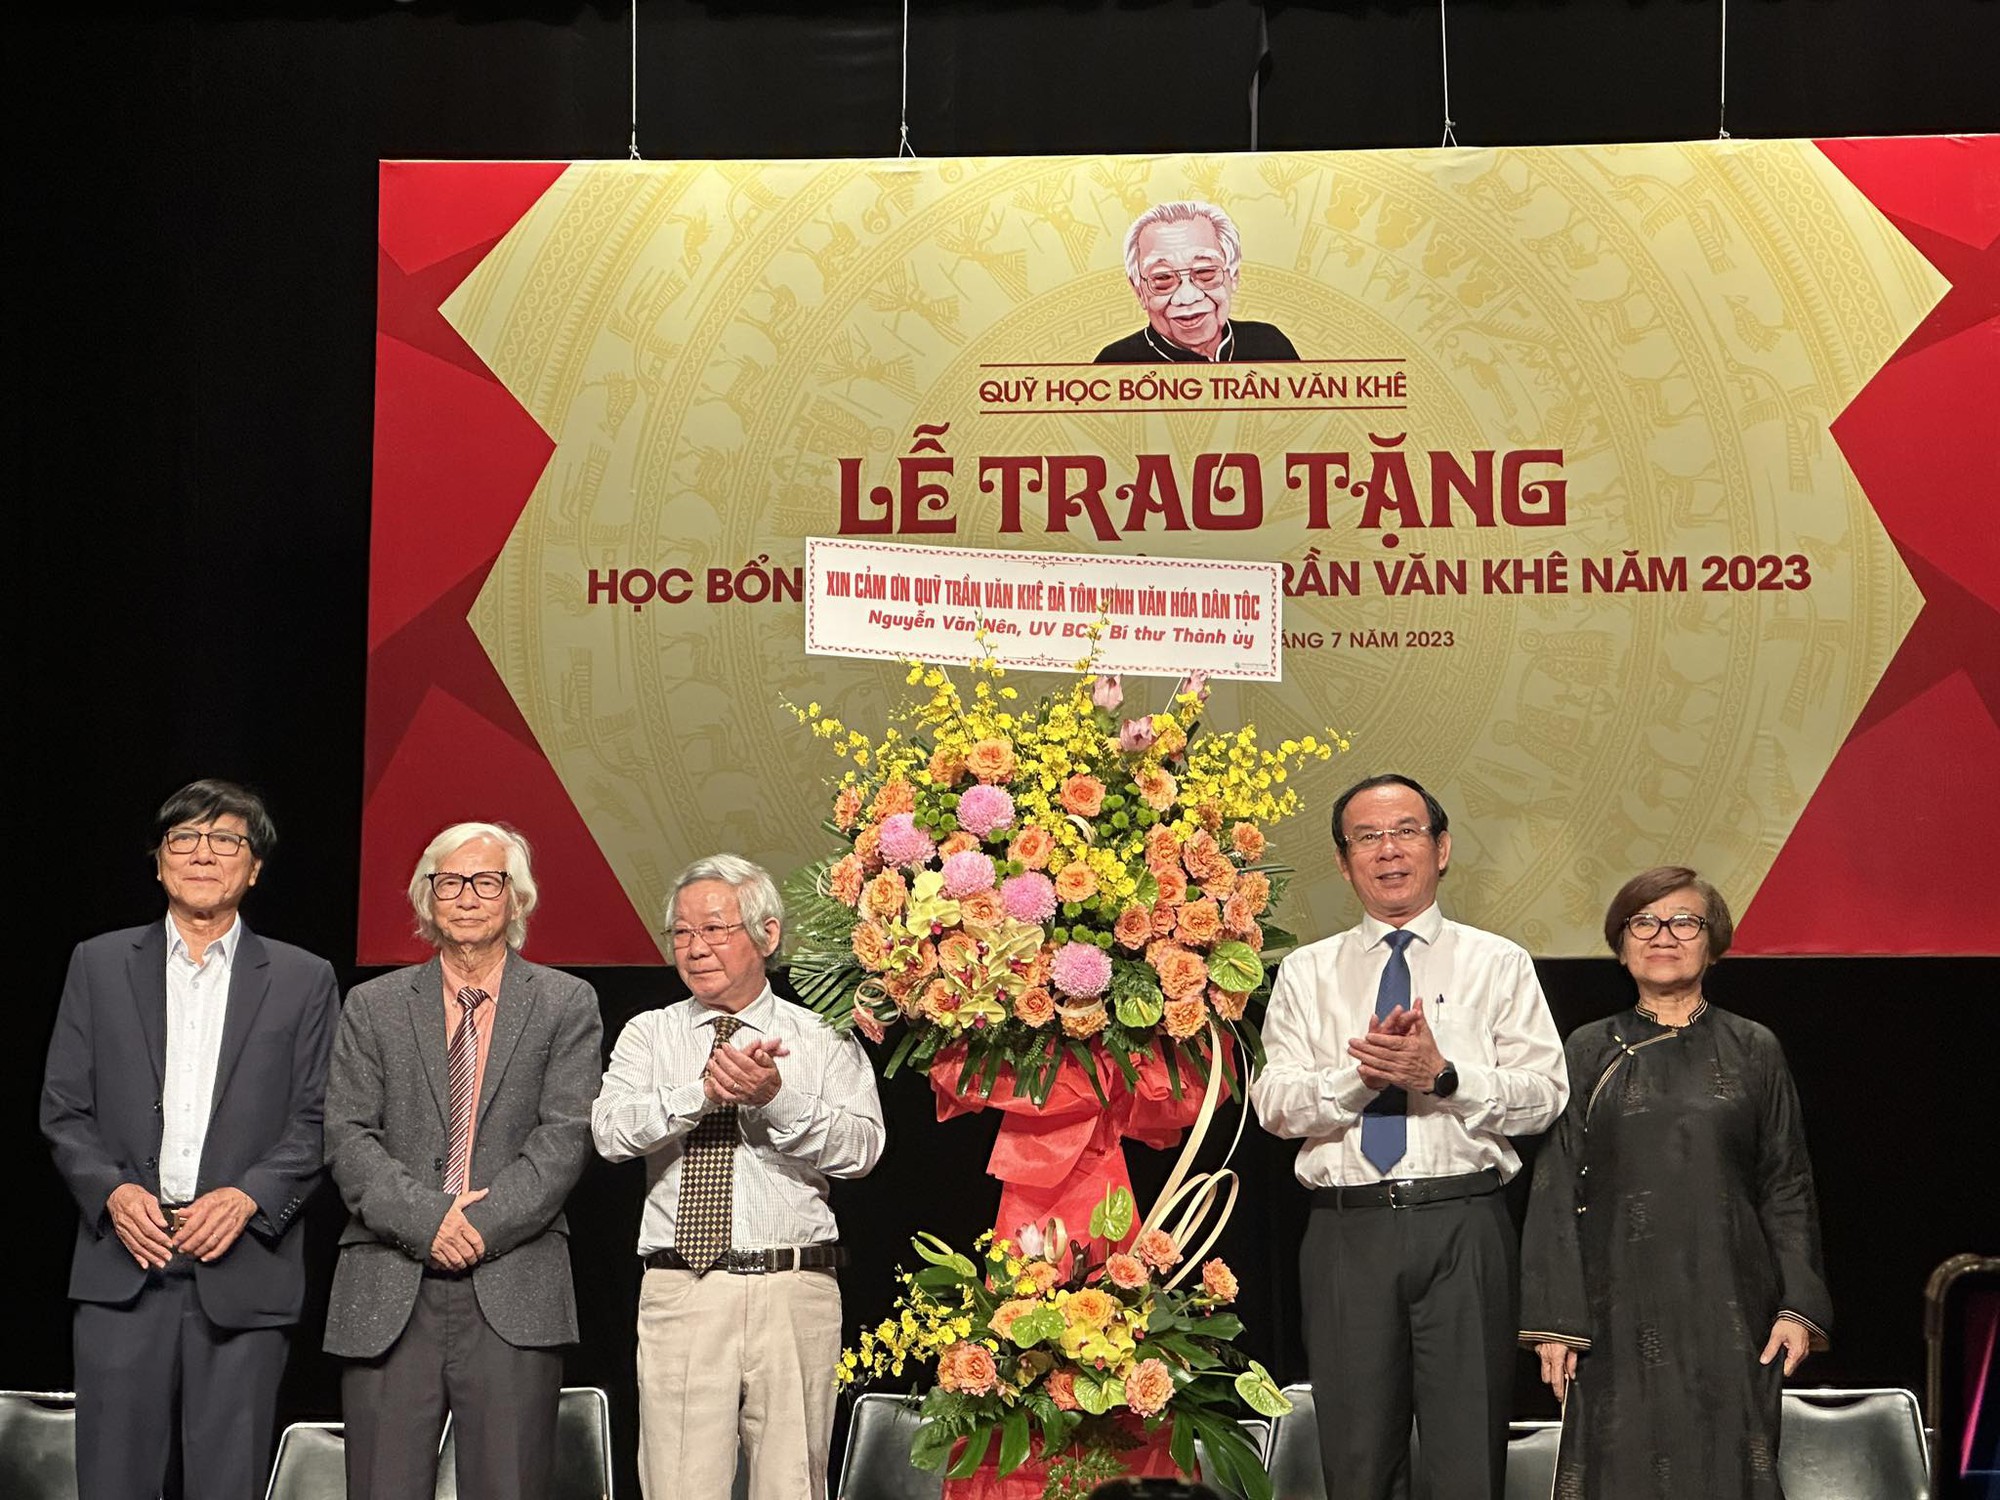 NSƯT, nhạc sĩ Nguyễn Văn Đời nhận giải thưởng Trần Văn Khê - Ảnh 1.